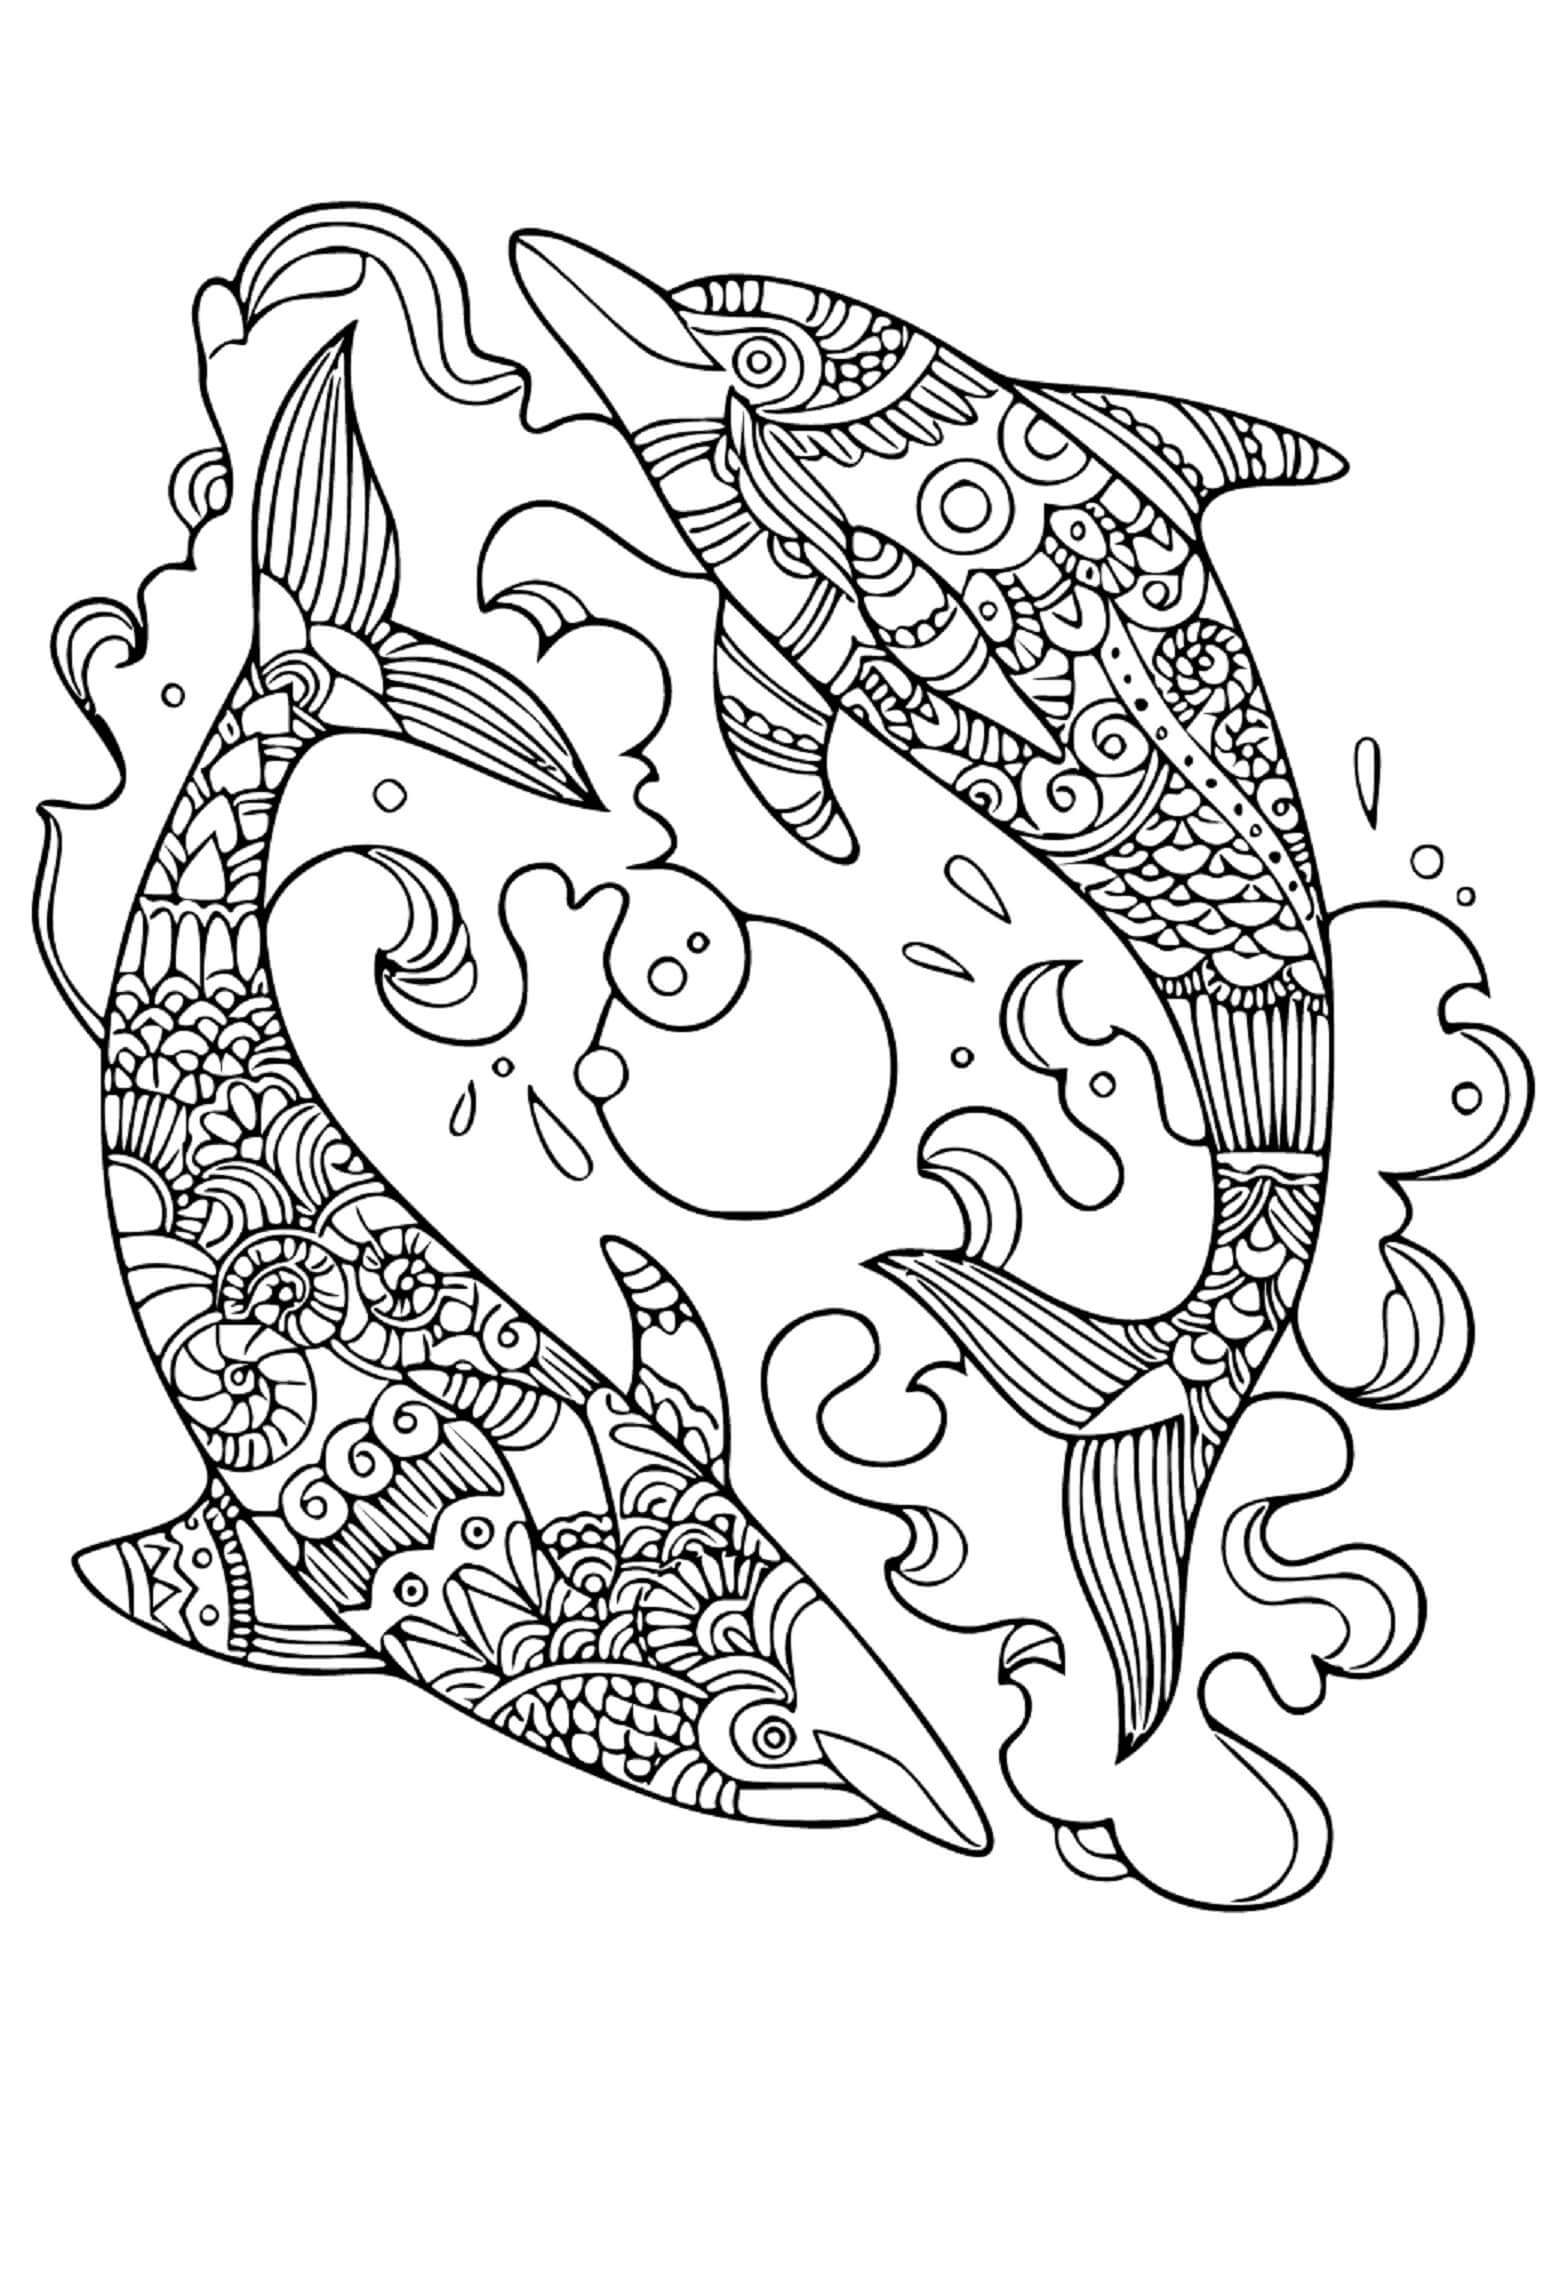 Mandala Two Dolphins Coloring Page Mandalas